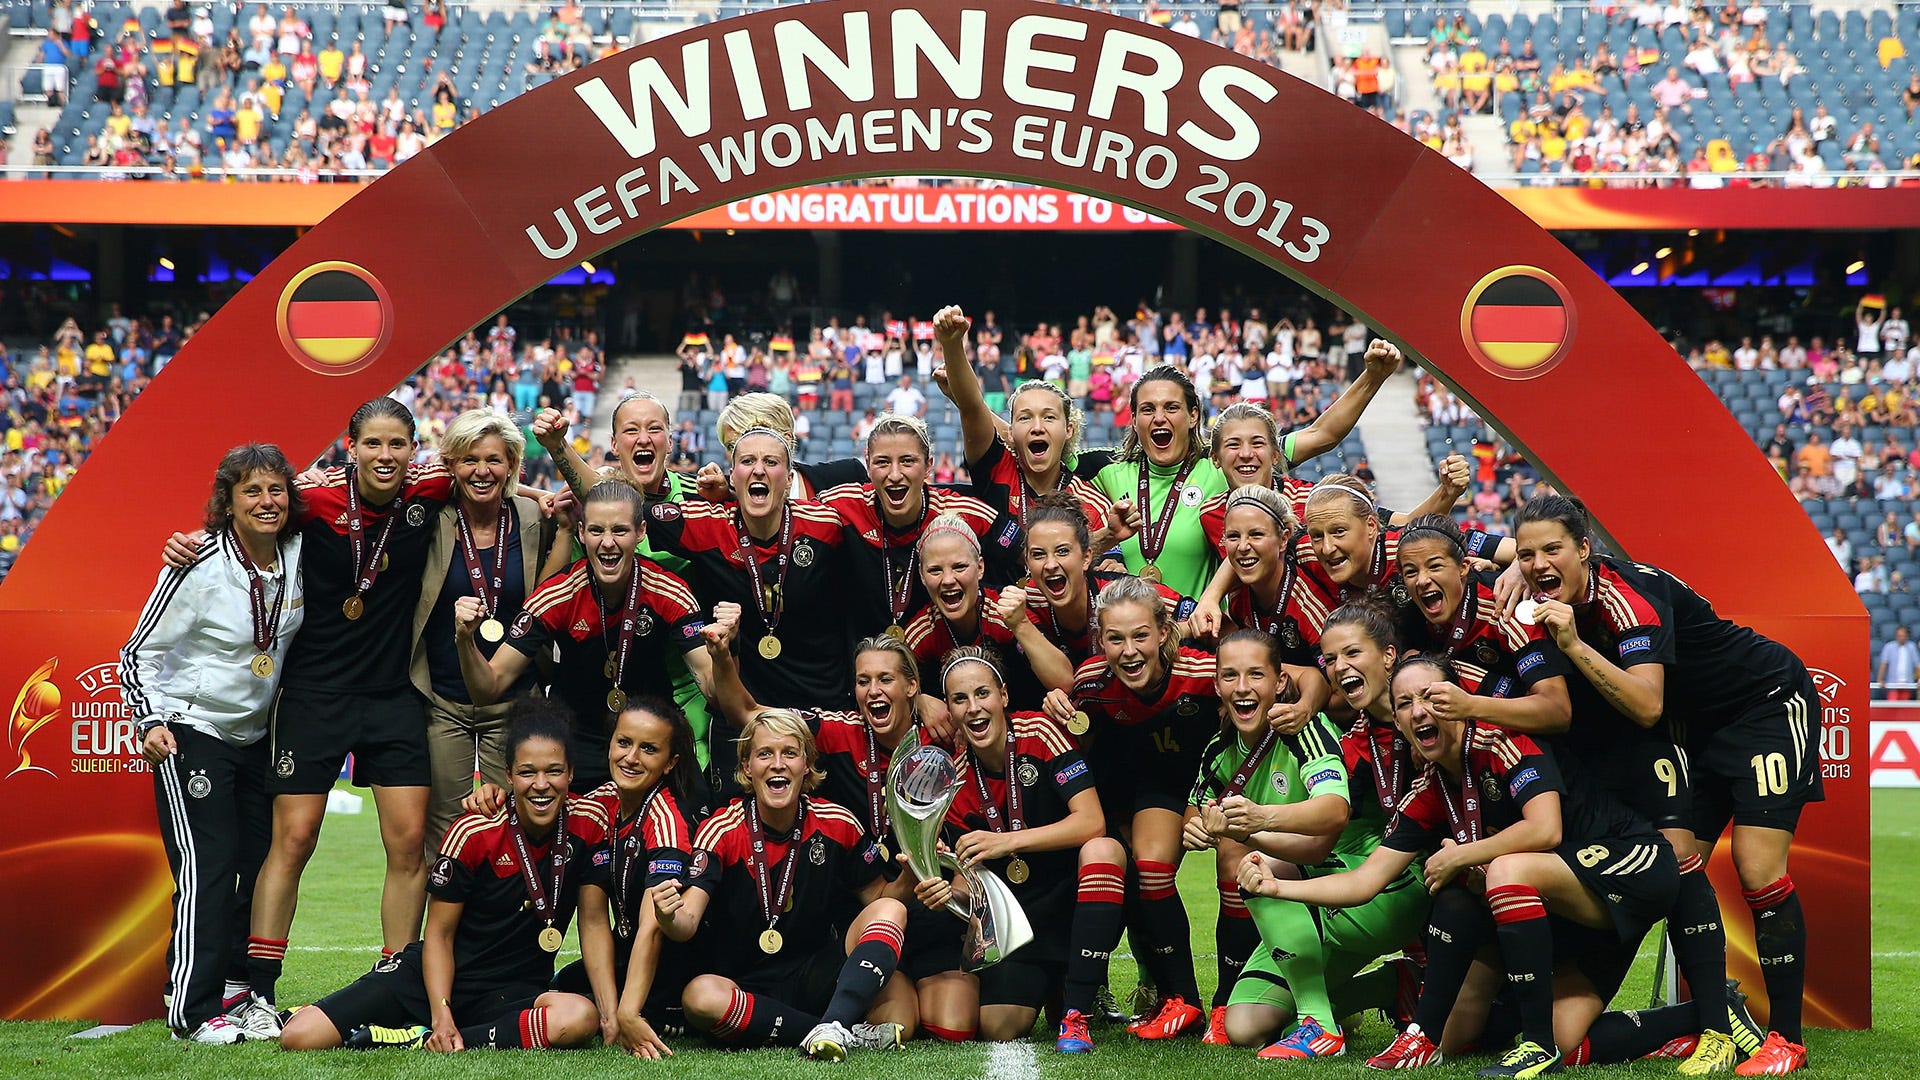 Germany 2013 Women's Euros winners